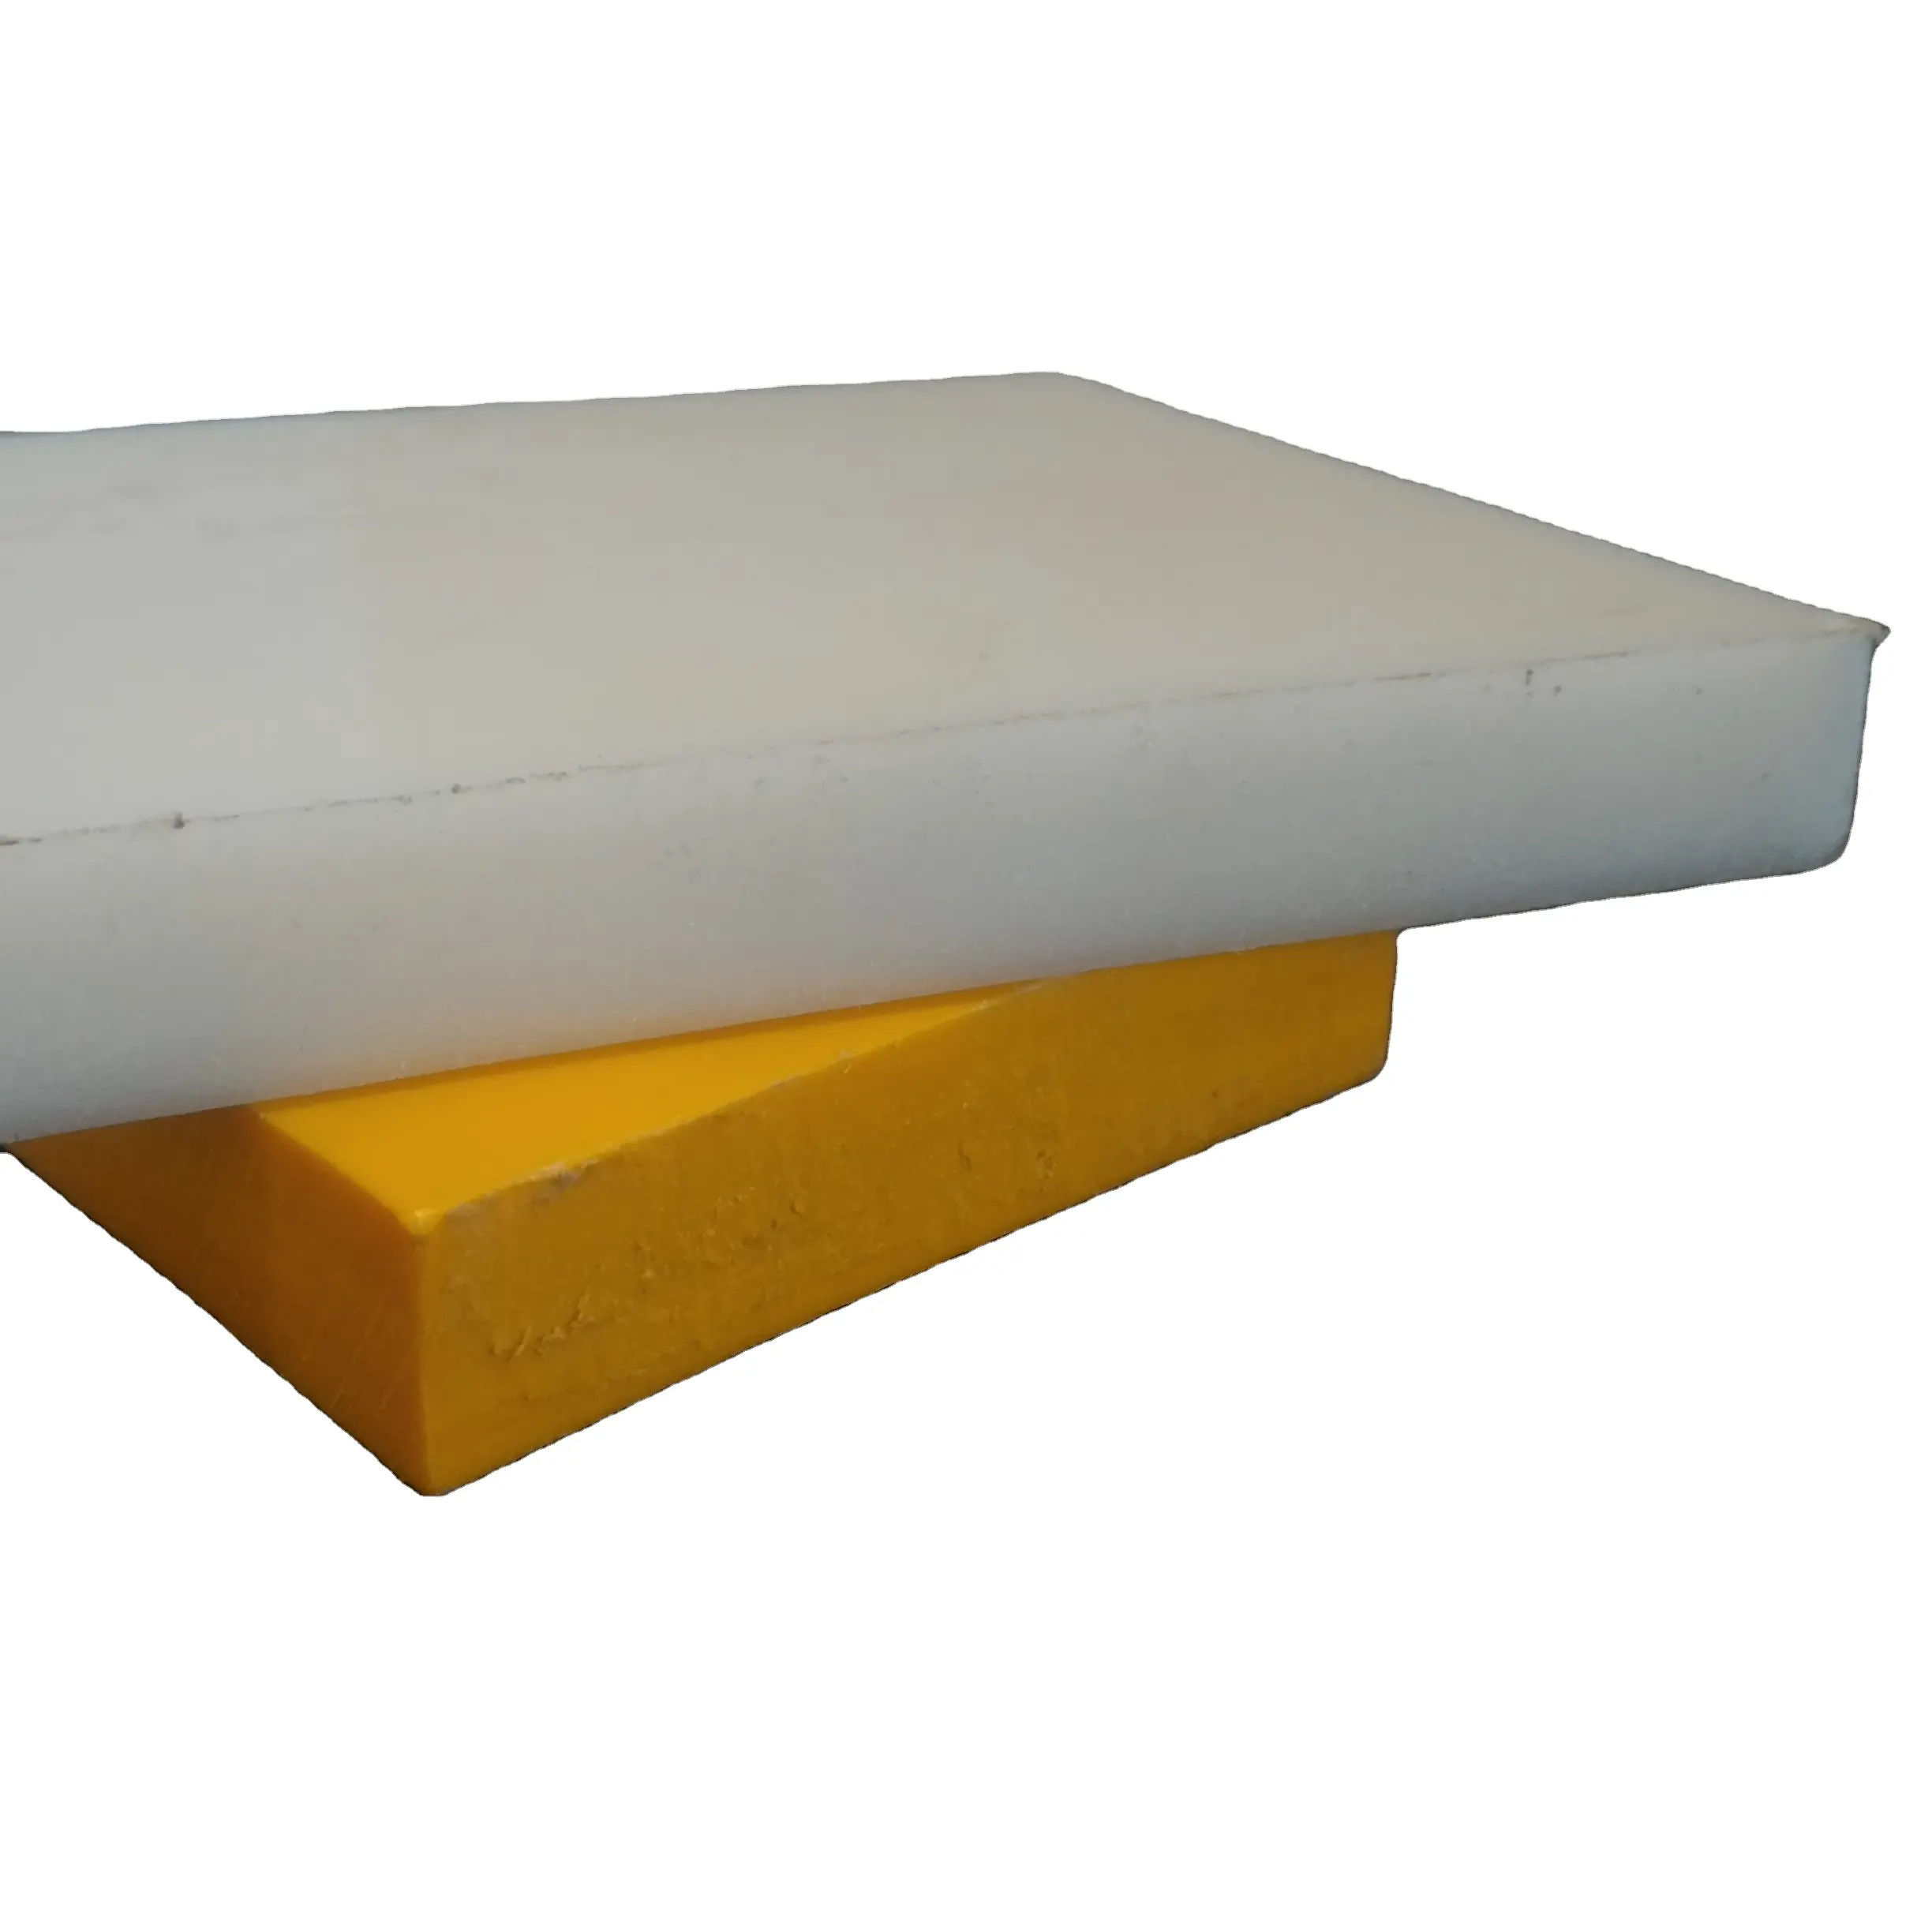 UP feuille de plastique vierge de qualité uhmwpe feuille solide couleur blanche 2 à 100 mm d'épaisseur polymère fort iso 9001:2015 entreprise certifiée